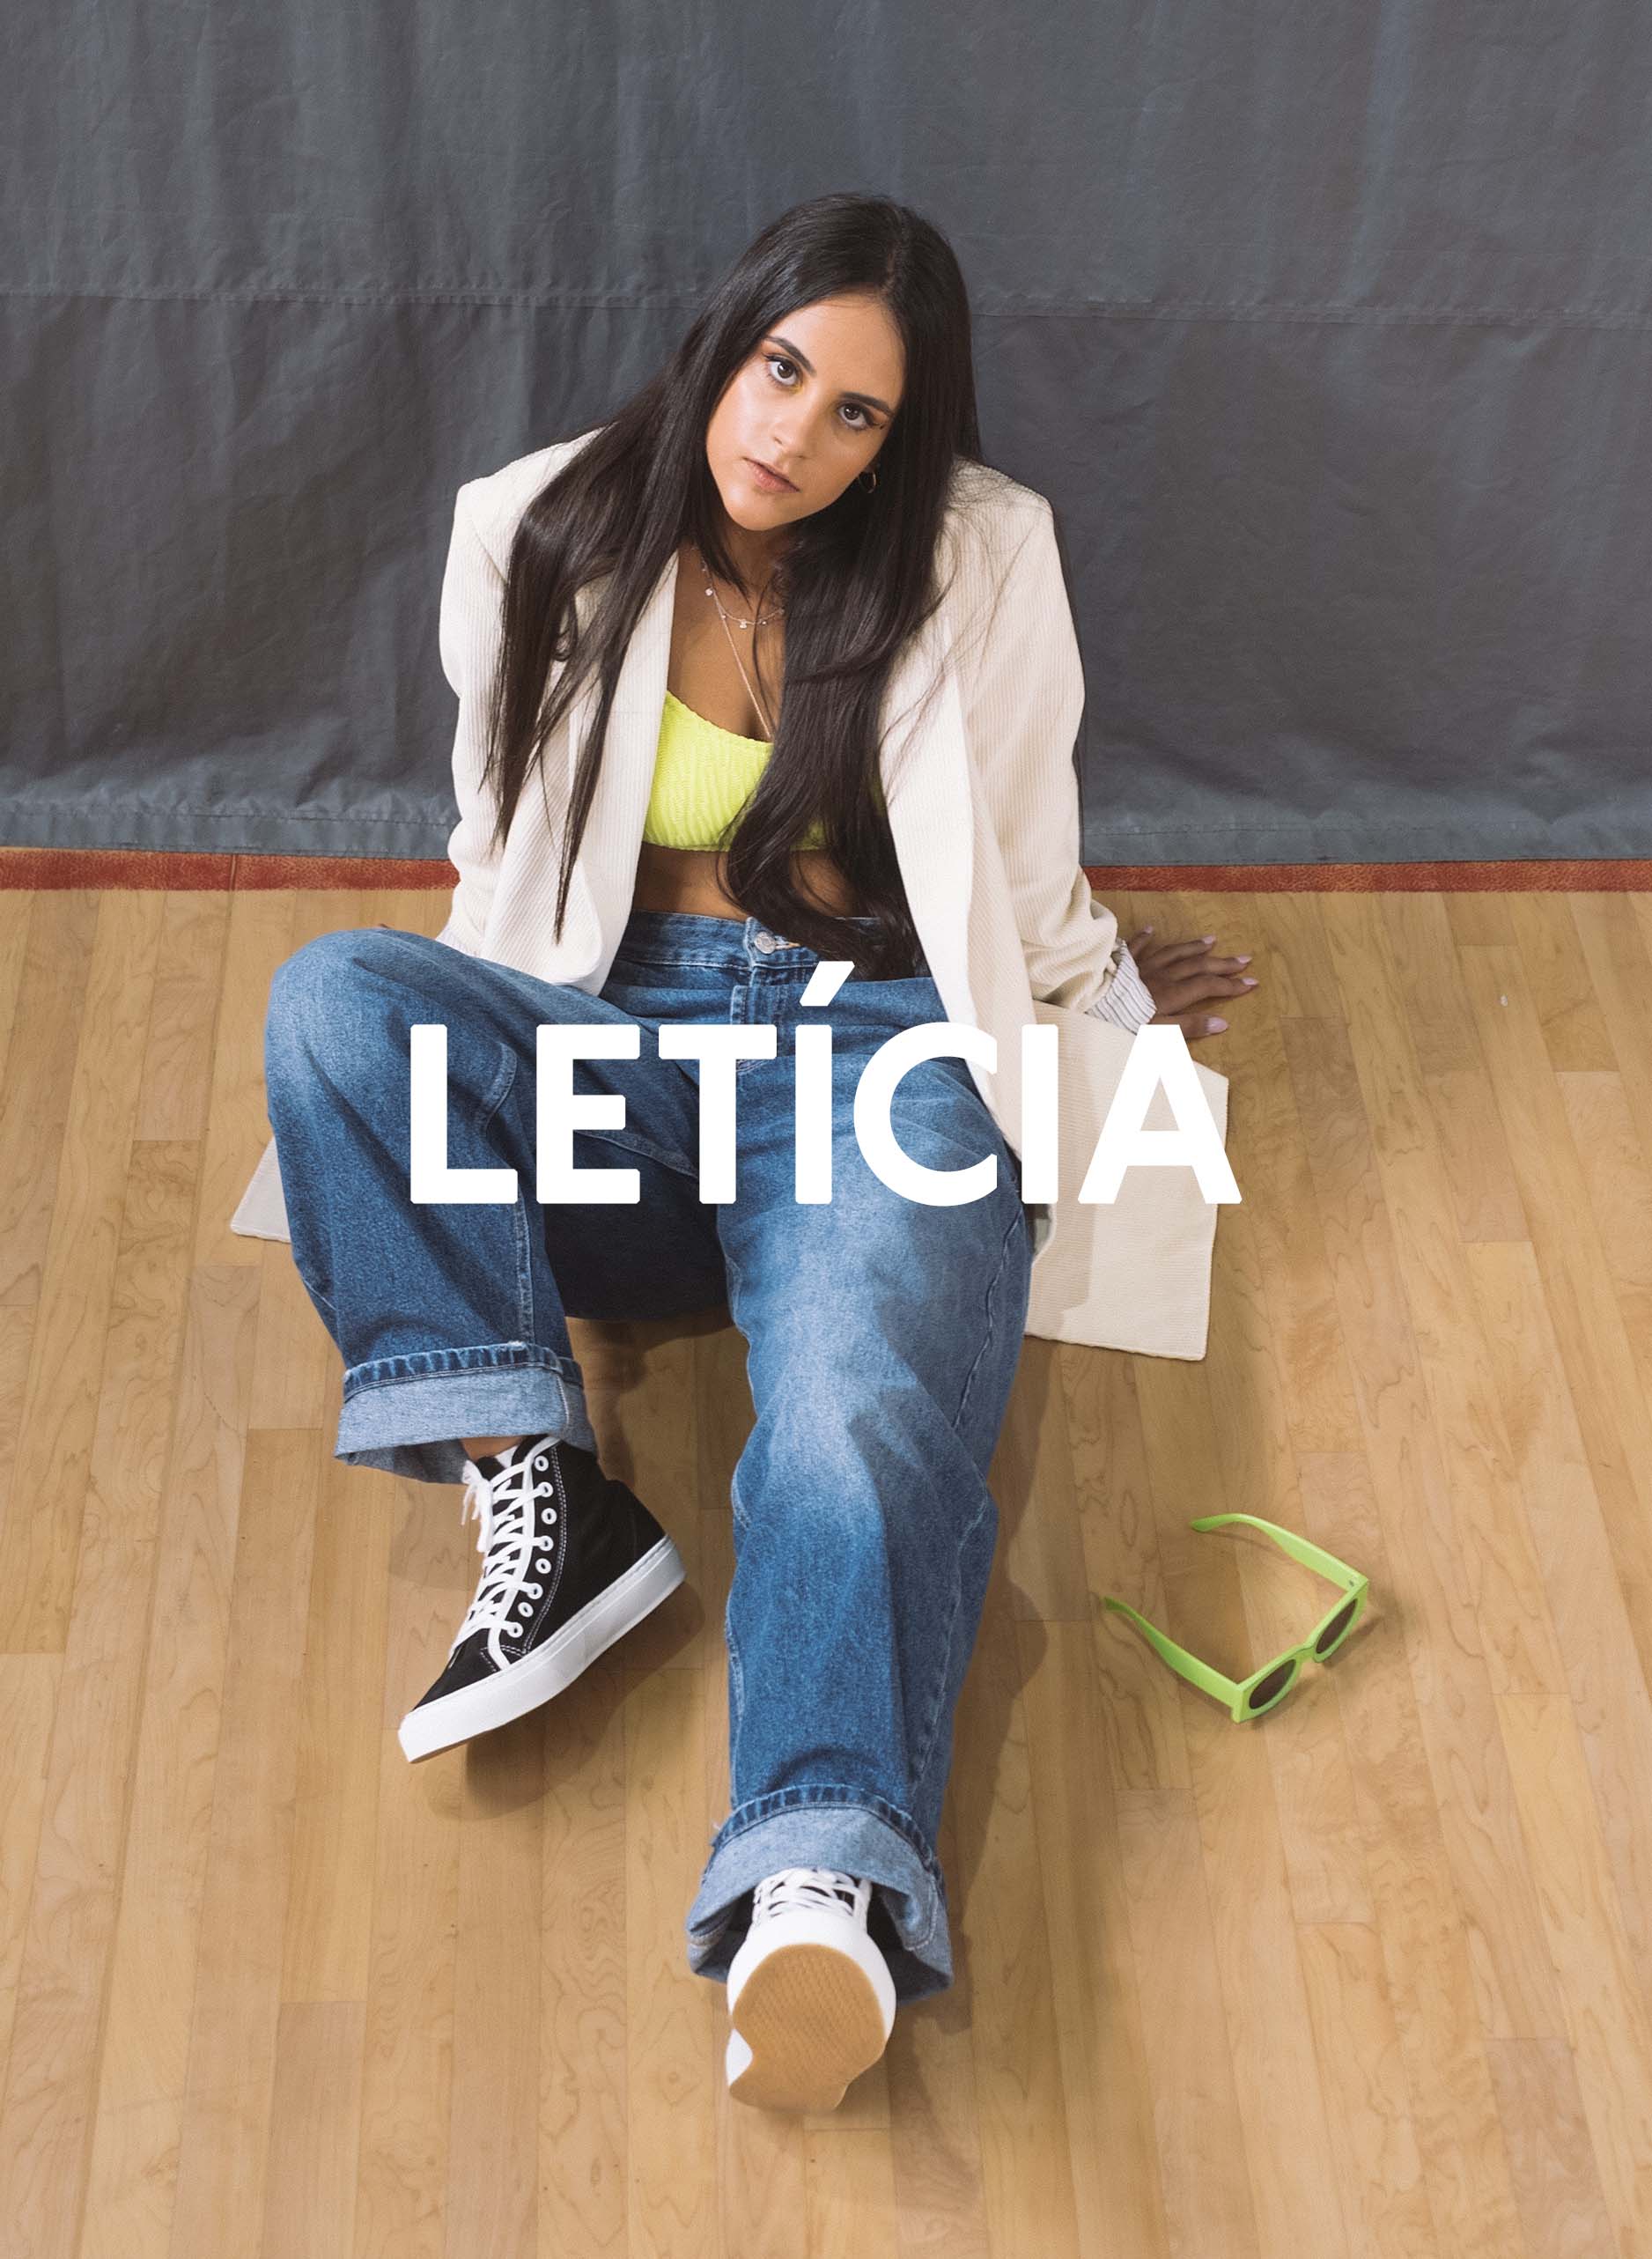 Leticia sitzt auf dem Boden eines Fitnessstudios und schaut direkt in die Kamera, Diverge sneakers, Förderung sozialer Auswirkungen und maßgefertigter Schuhe im Rahmen des IMAGINE-Projekts. 